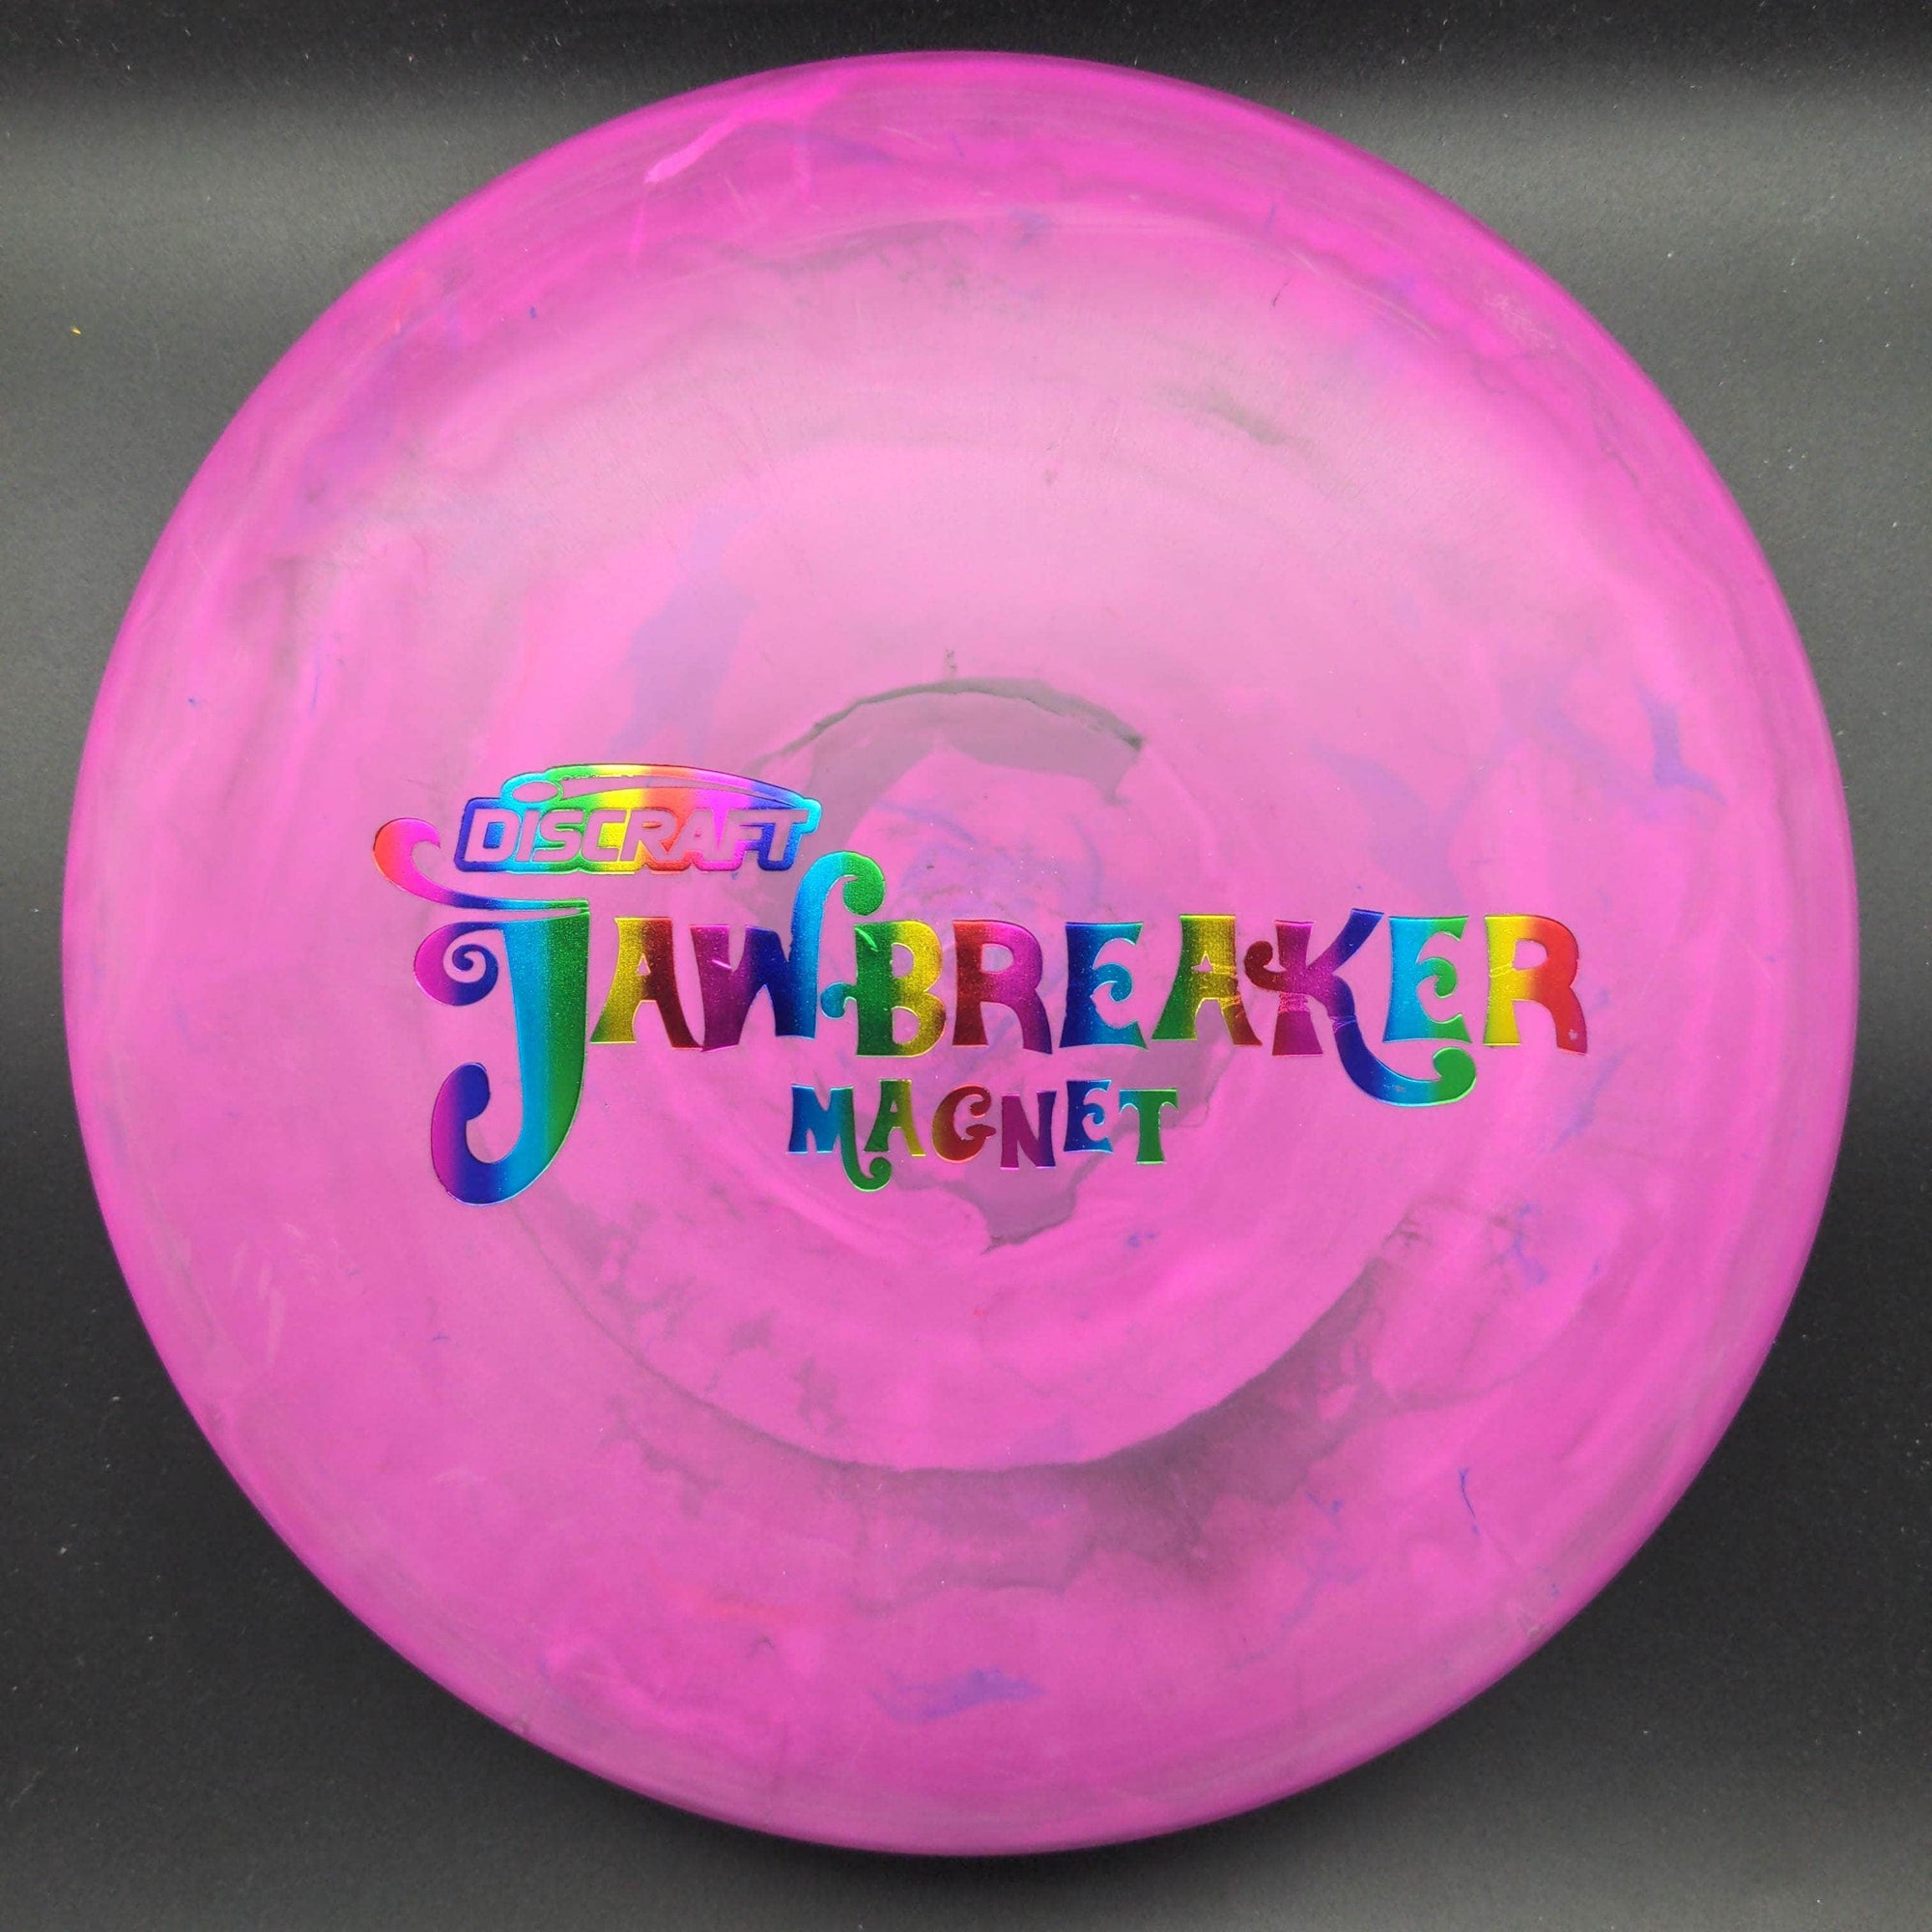 Discraft Putter Pink Rainbow Stamp 172g Magnet, Jawbreaker